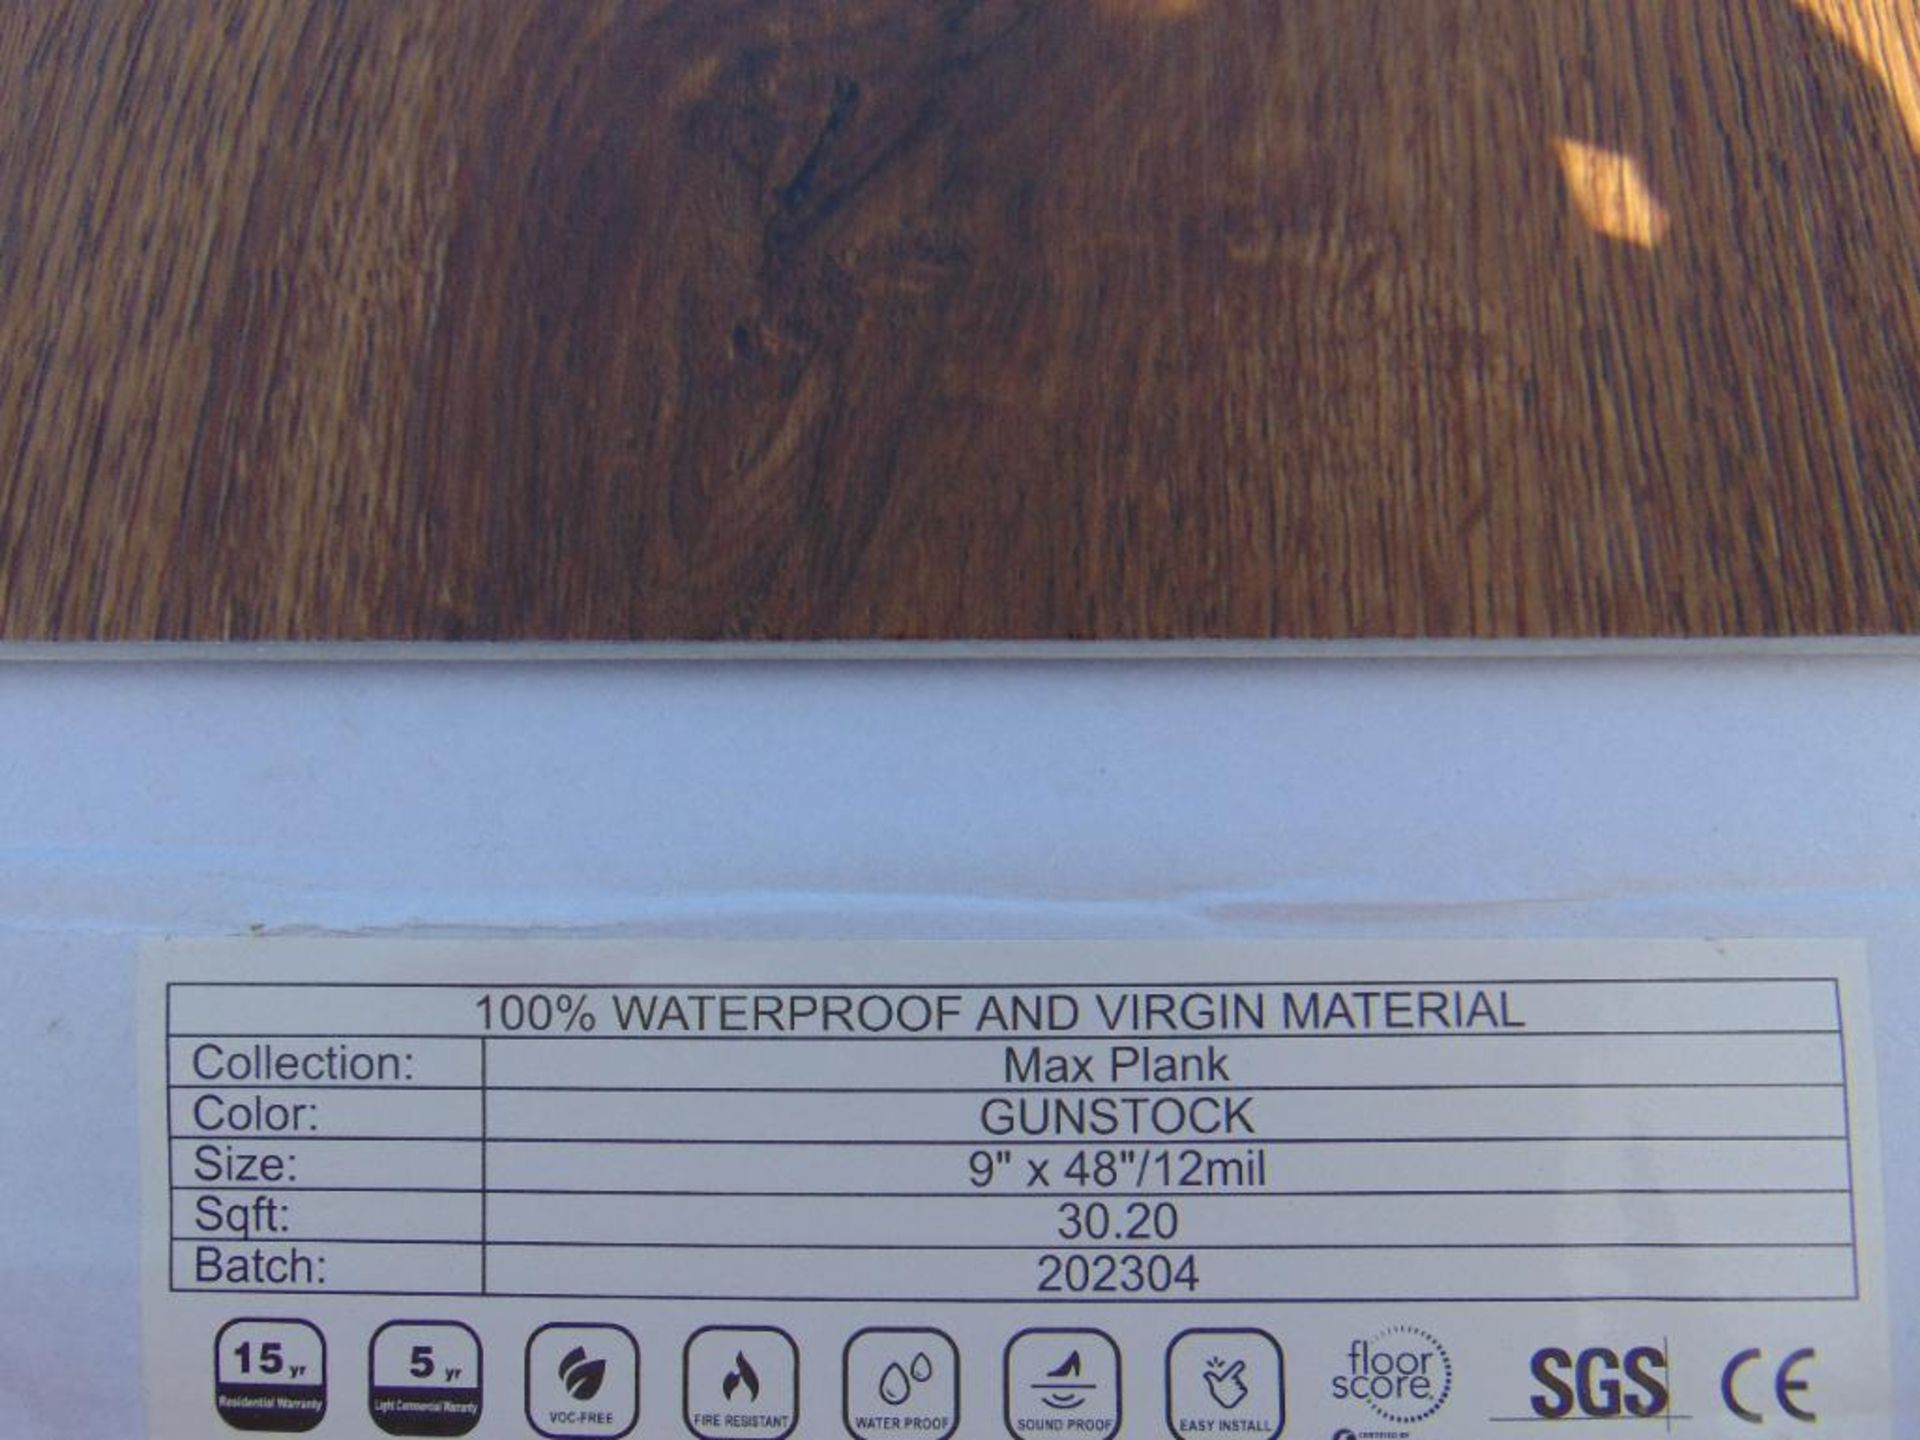 875.80 SF Waterproof Max Gunstock Oak Snap Together Vinyl Flooring - Image 4 of 6